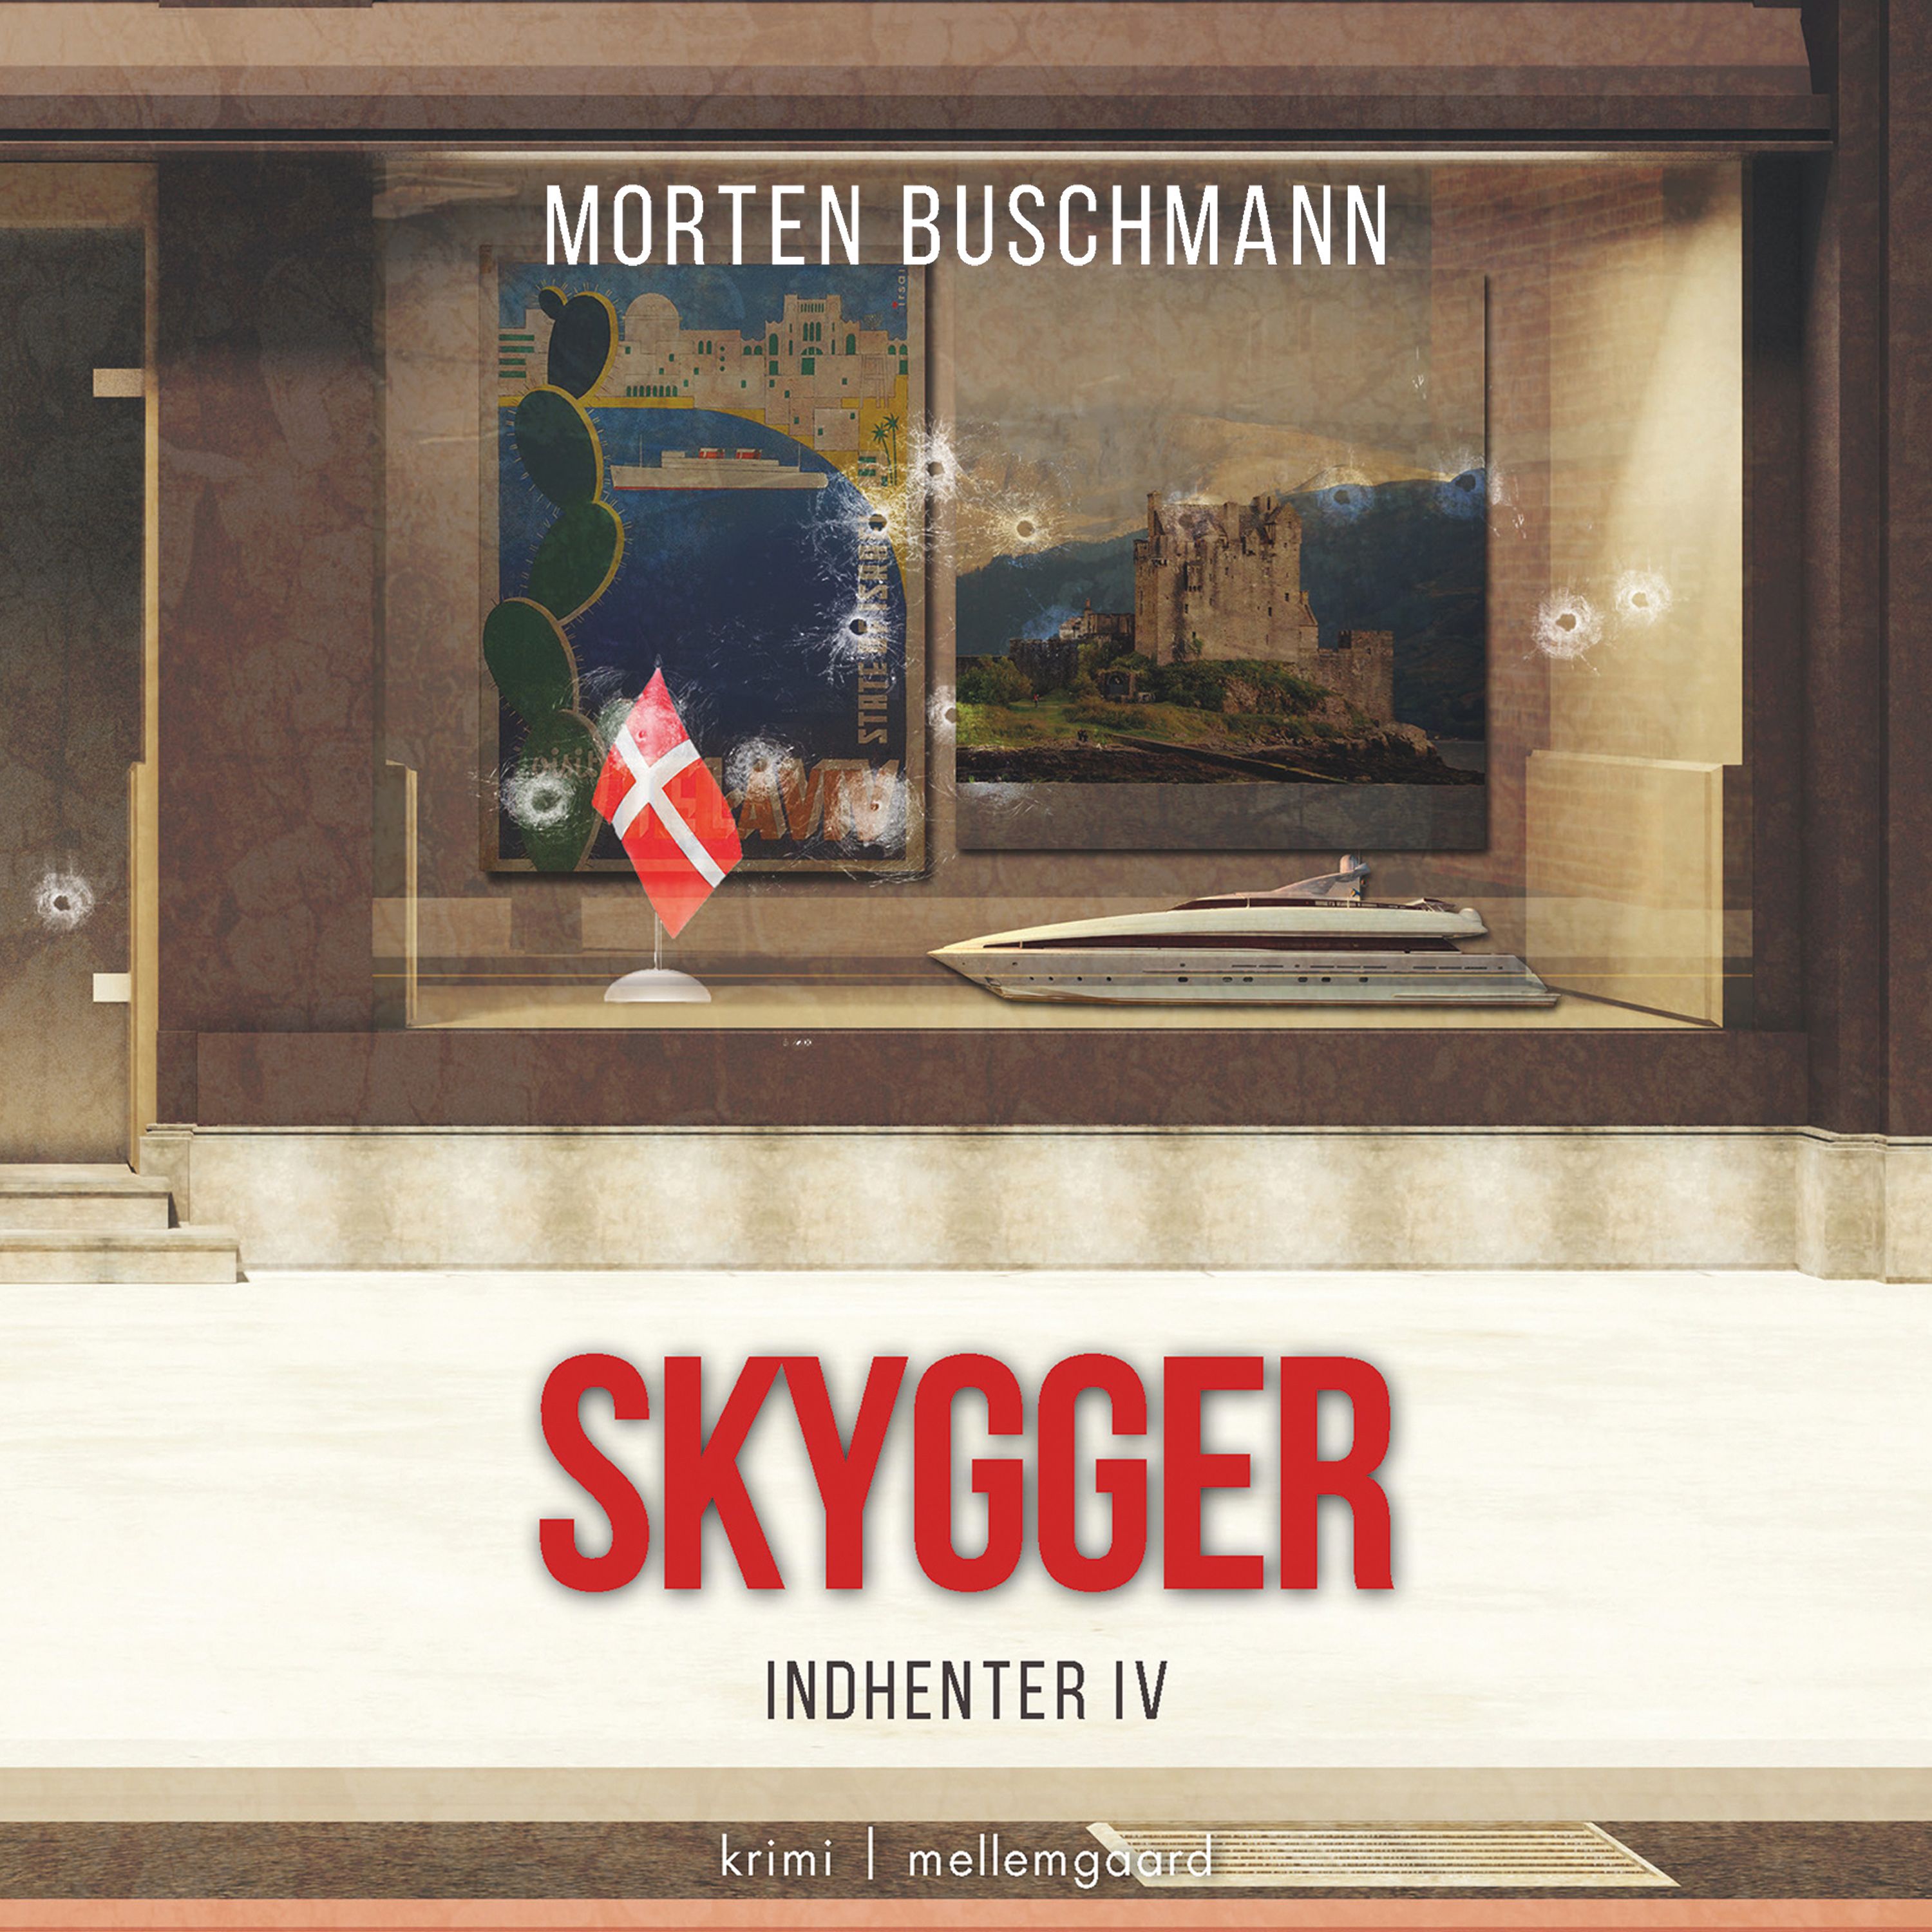 Skygger, ljudbok av Morten Buschmann